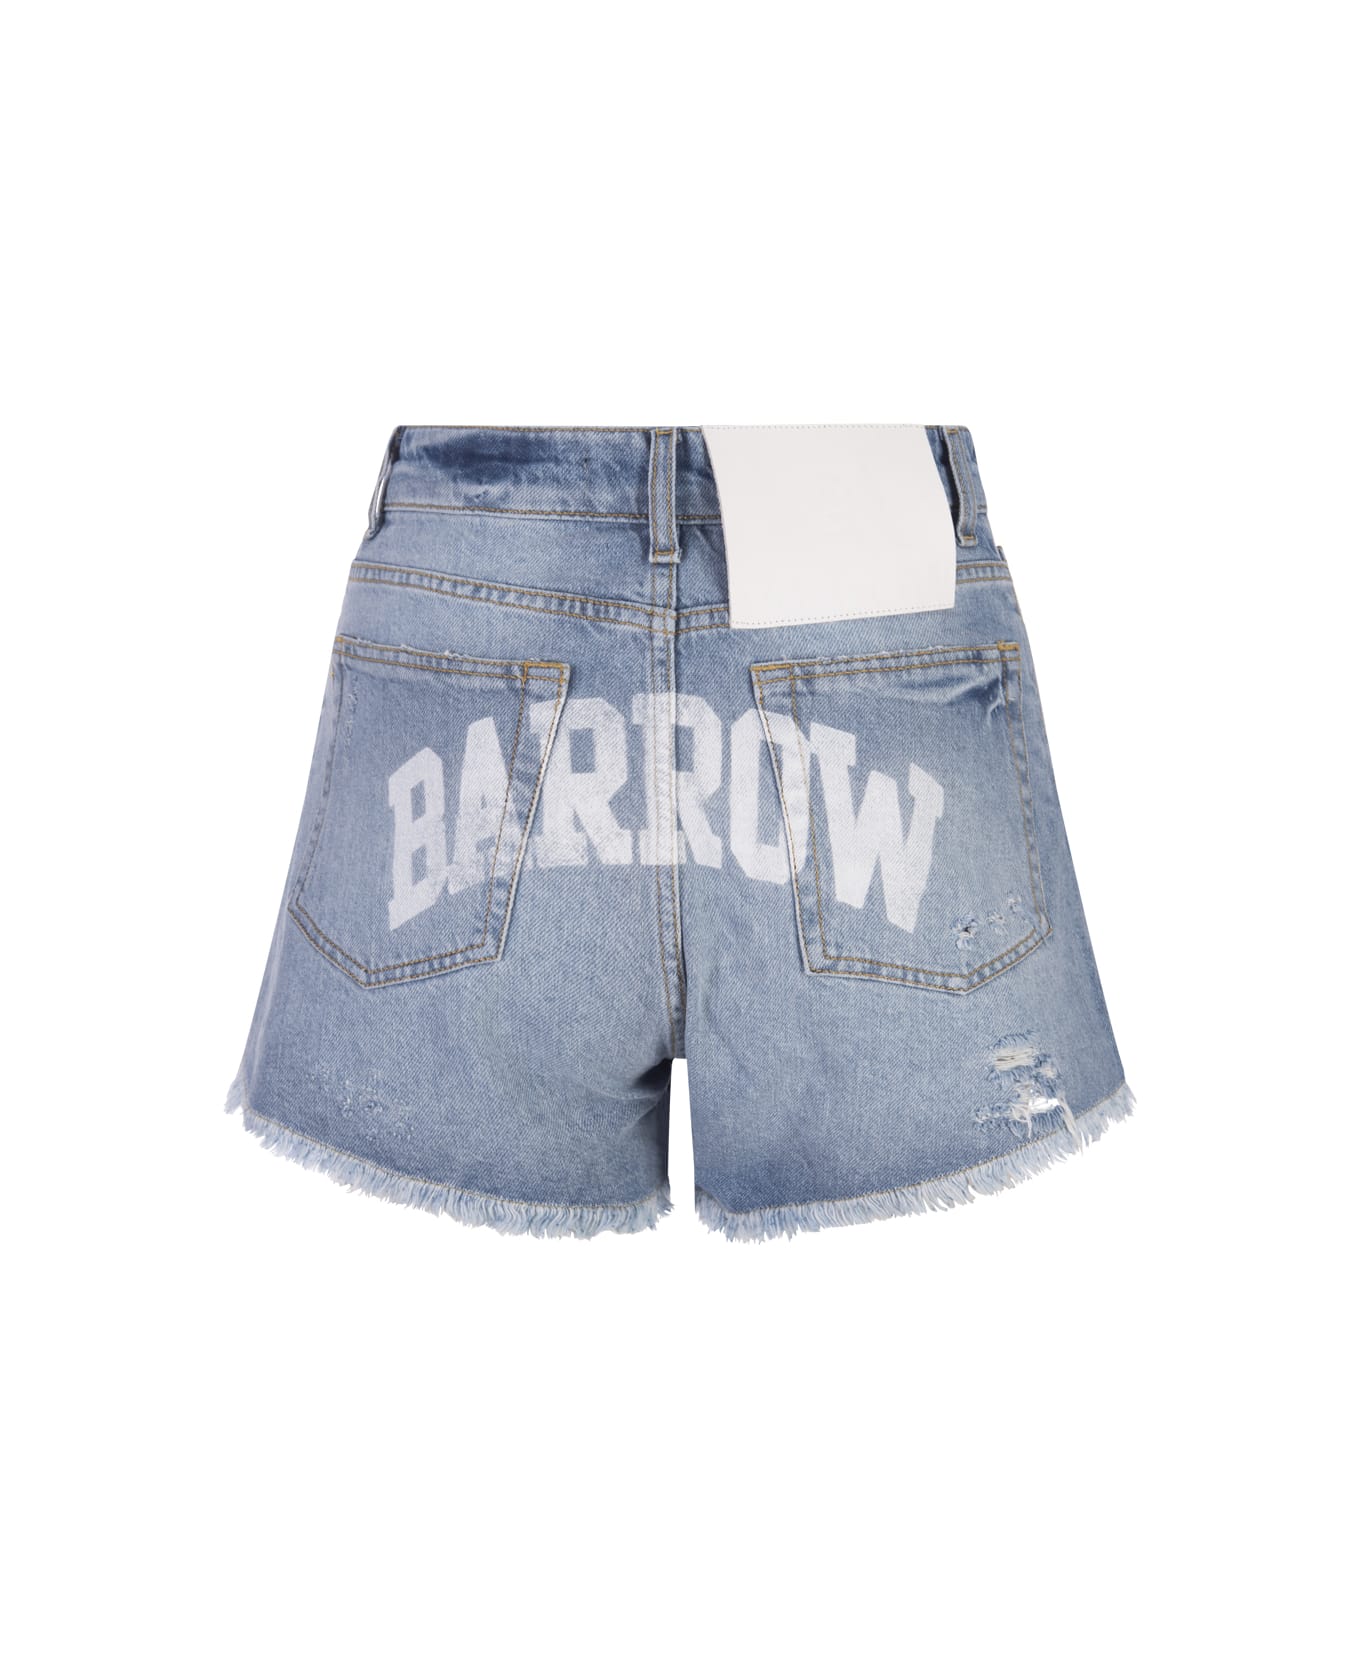 Barrow Medium Blue Denim Shorts With Back Logo - Blue ボトムス